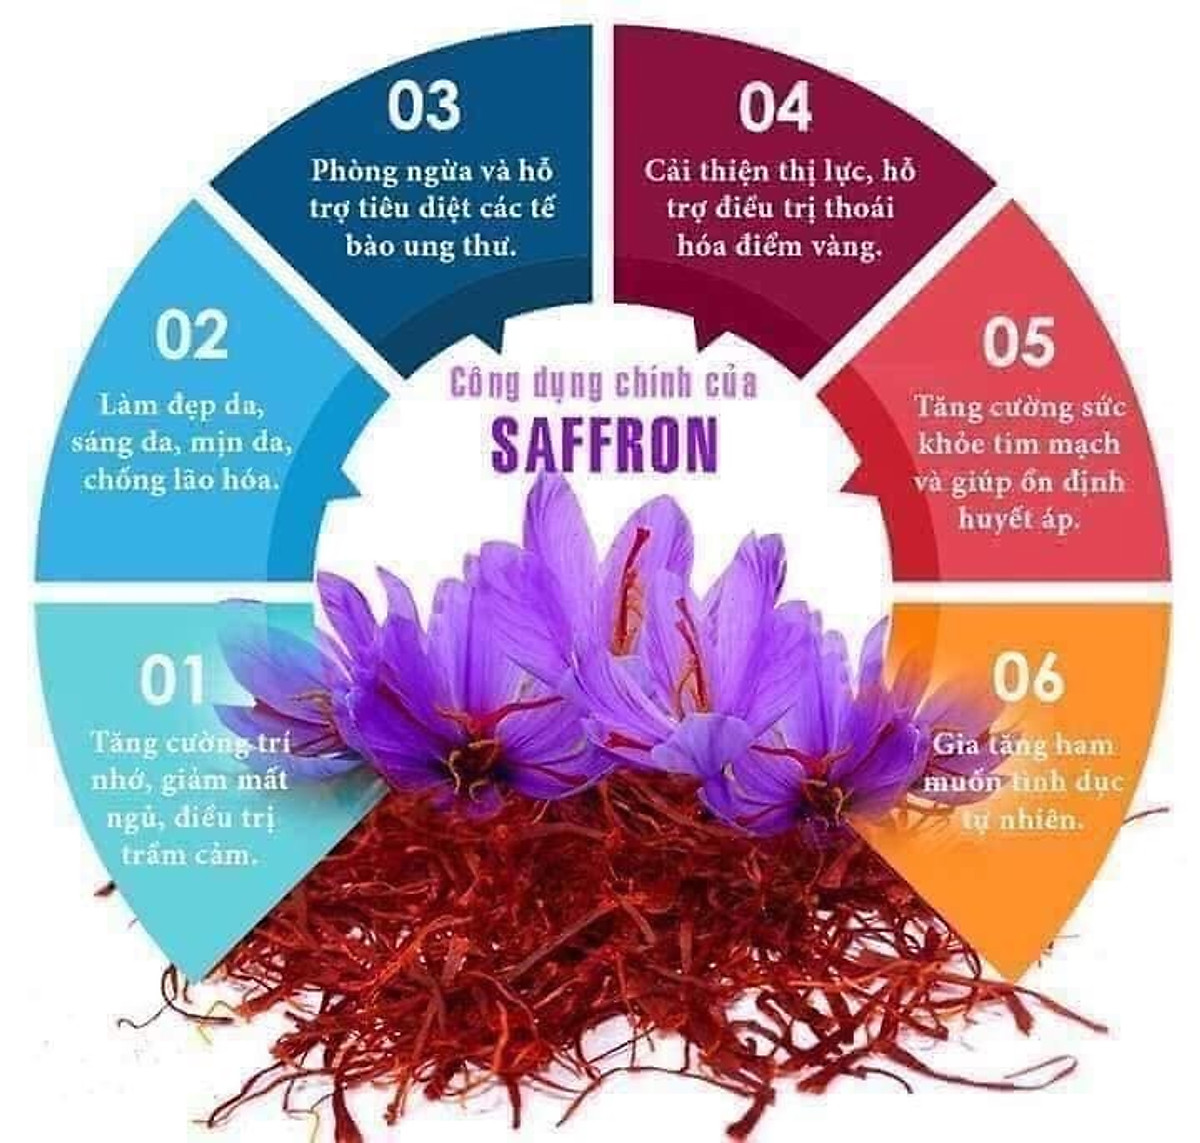 Chụp ảnh sản phẩm Saffron nhụy hoa nghệ tây trong studio Hà Nội